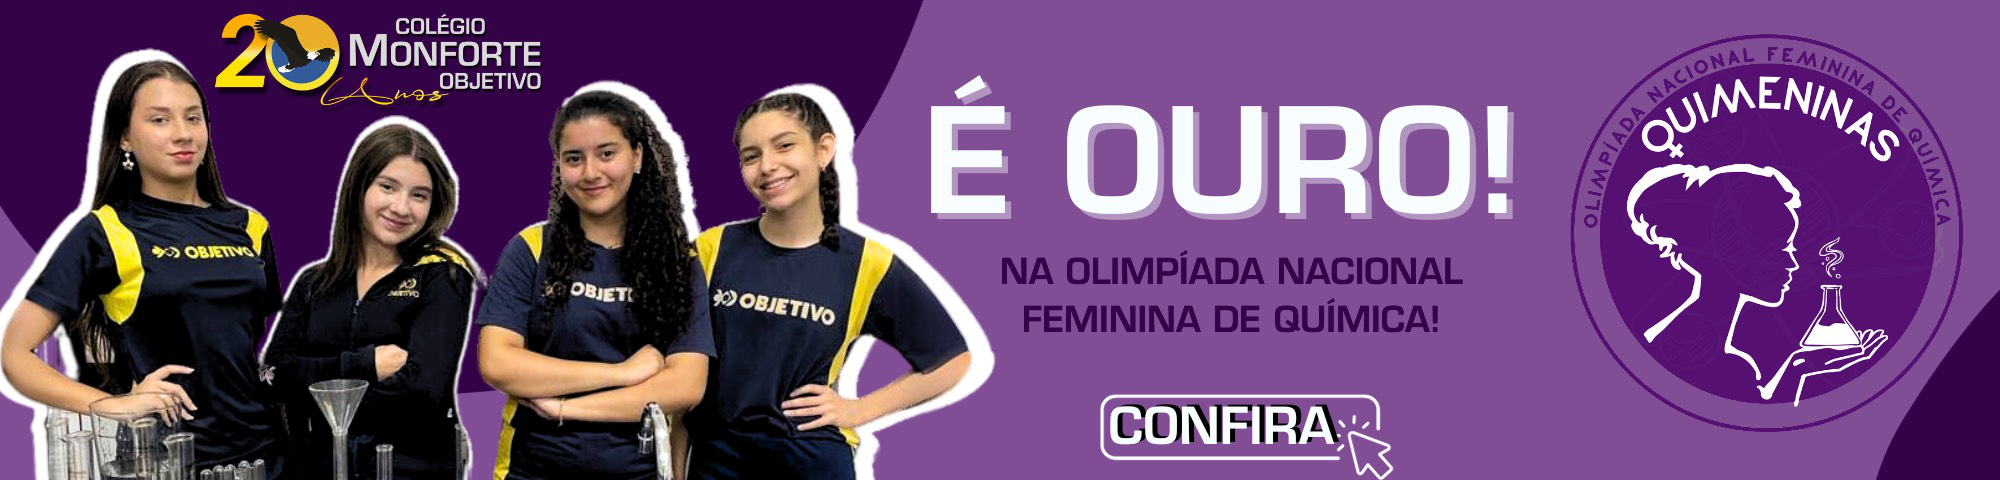 Olimpíada Nacional Feminina de Química: Catarina Ribeiro é ouro e se destaca na competição